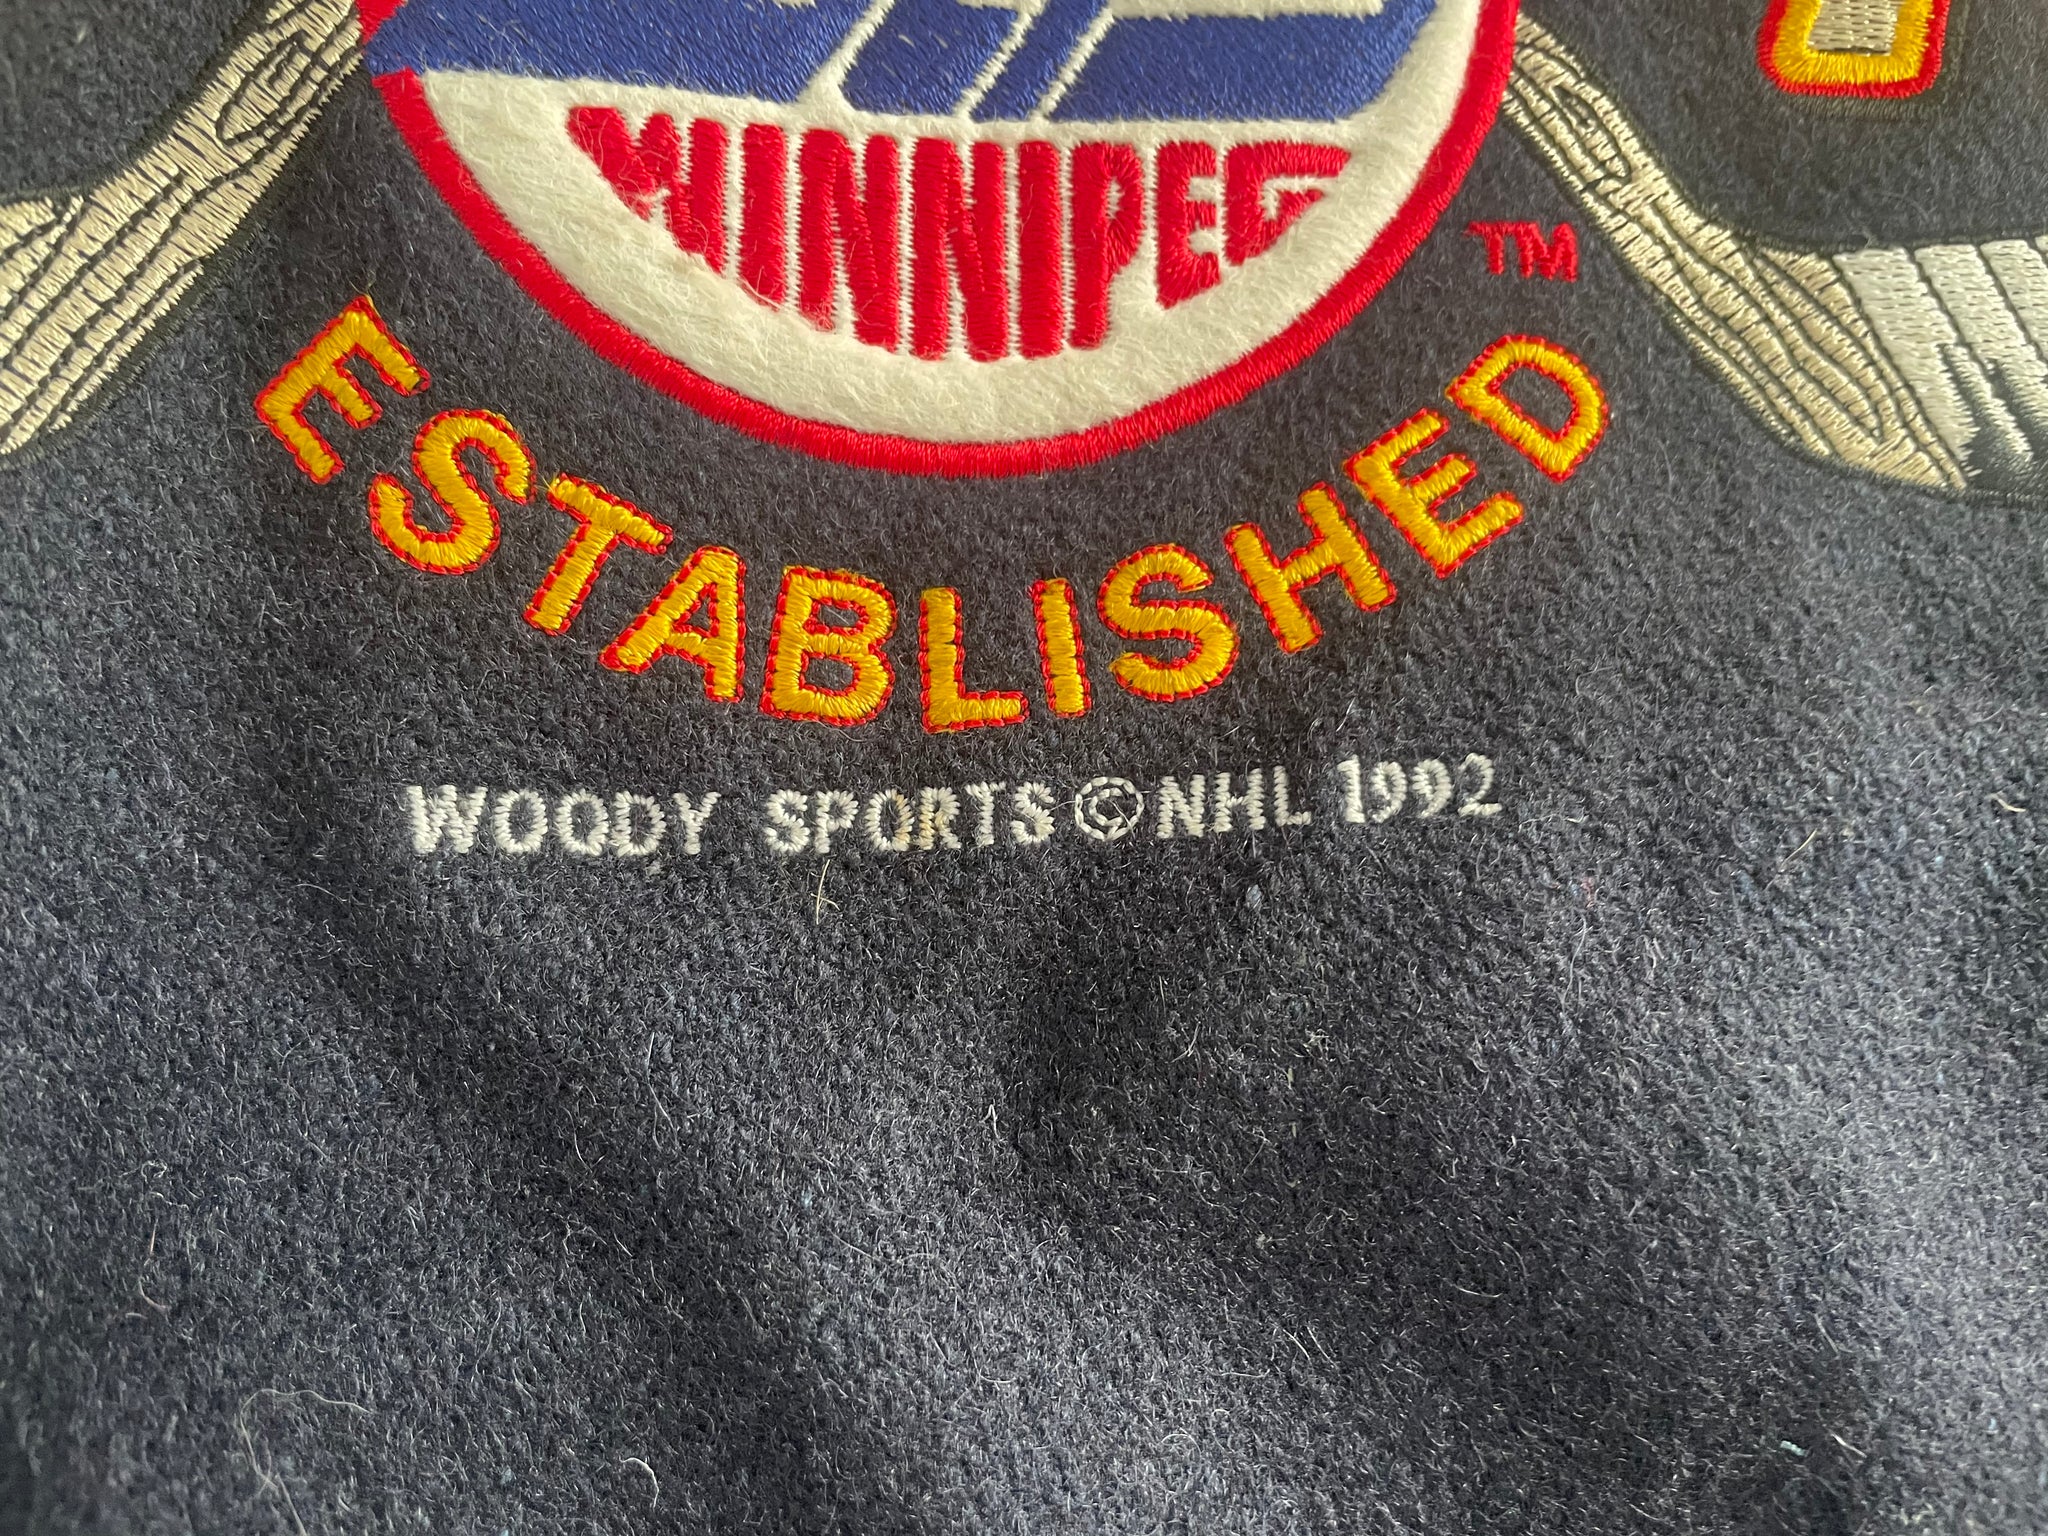 Winnipeg Jets Sweatshirt Jets Tee Hockey Sweatshirt Vintage 